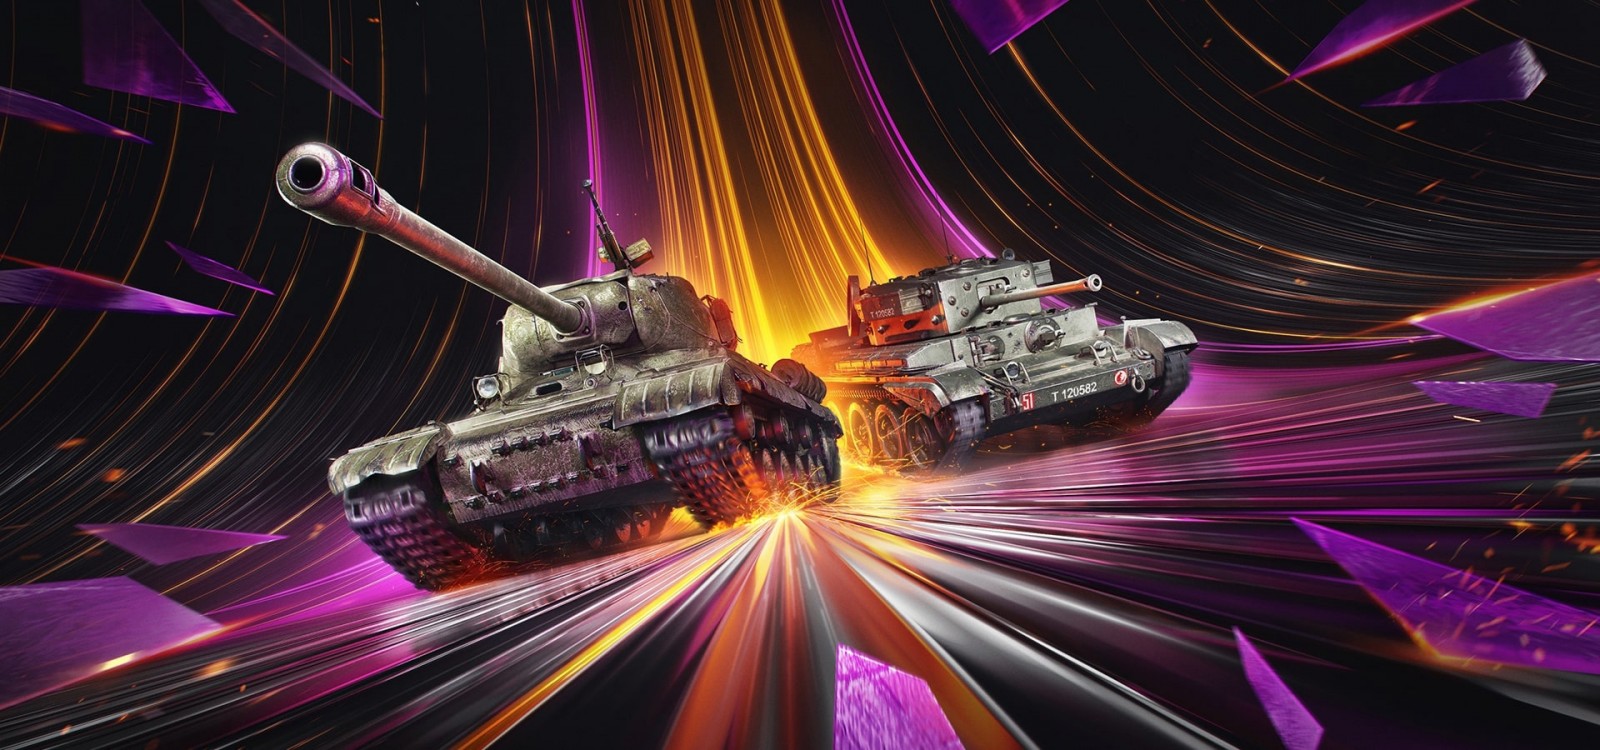 Арендные танки для пользователей тарифа «Игровой» от Ростелекома (РТК) на месяц Апрель 2023 в Мире танков